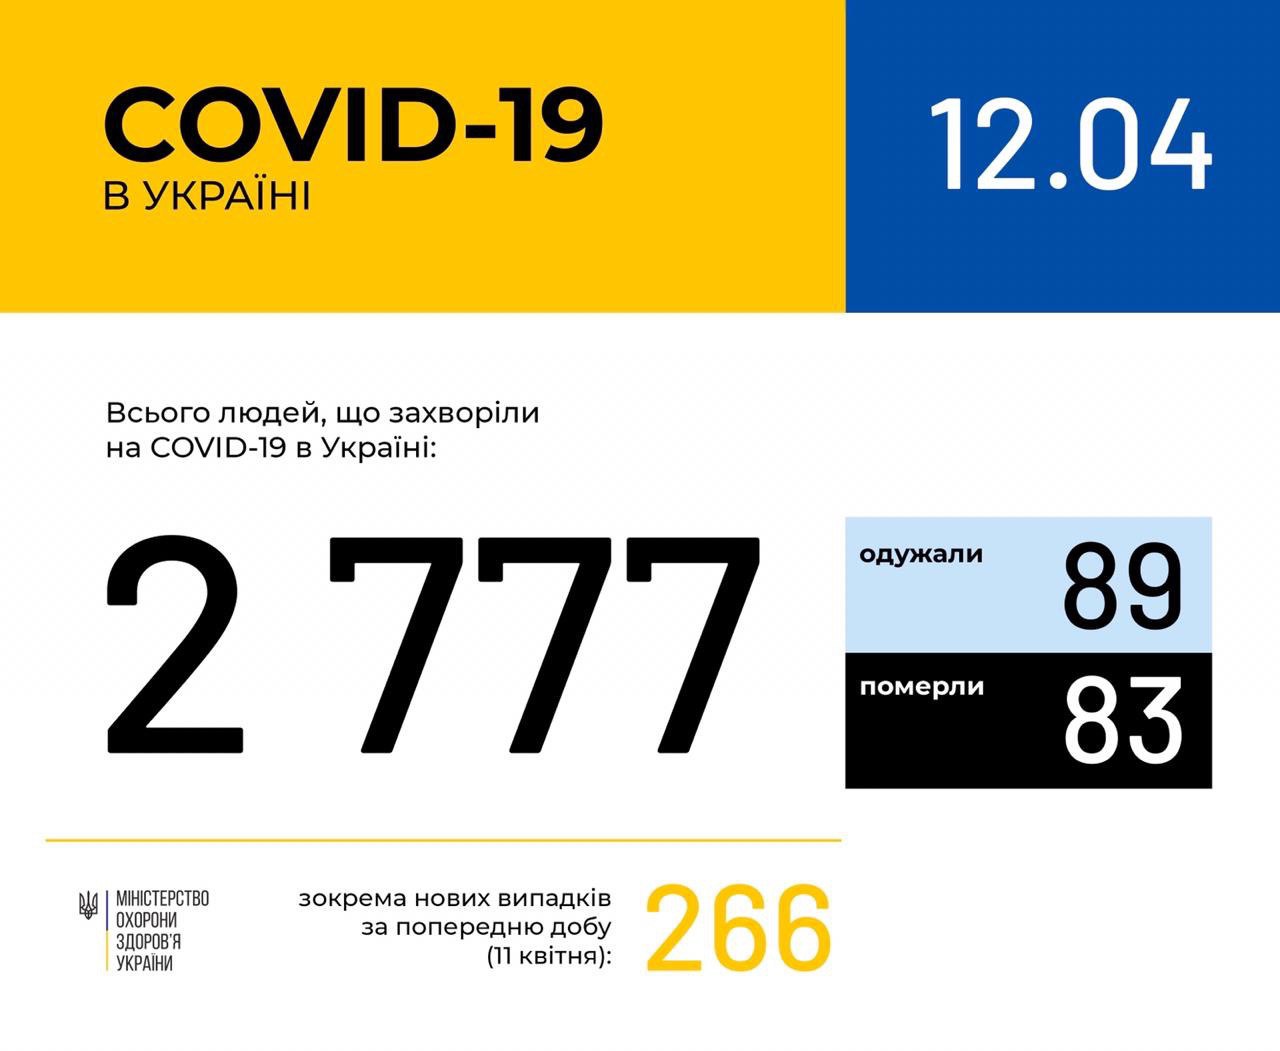 В Україні зафіксовано 2777 випадків коронавірусної хвороби COVID-19, - МОЗ